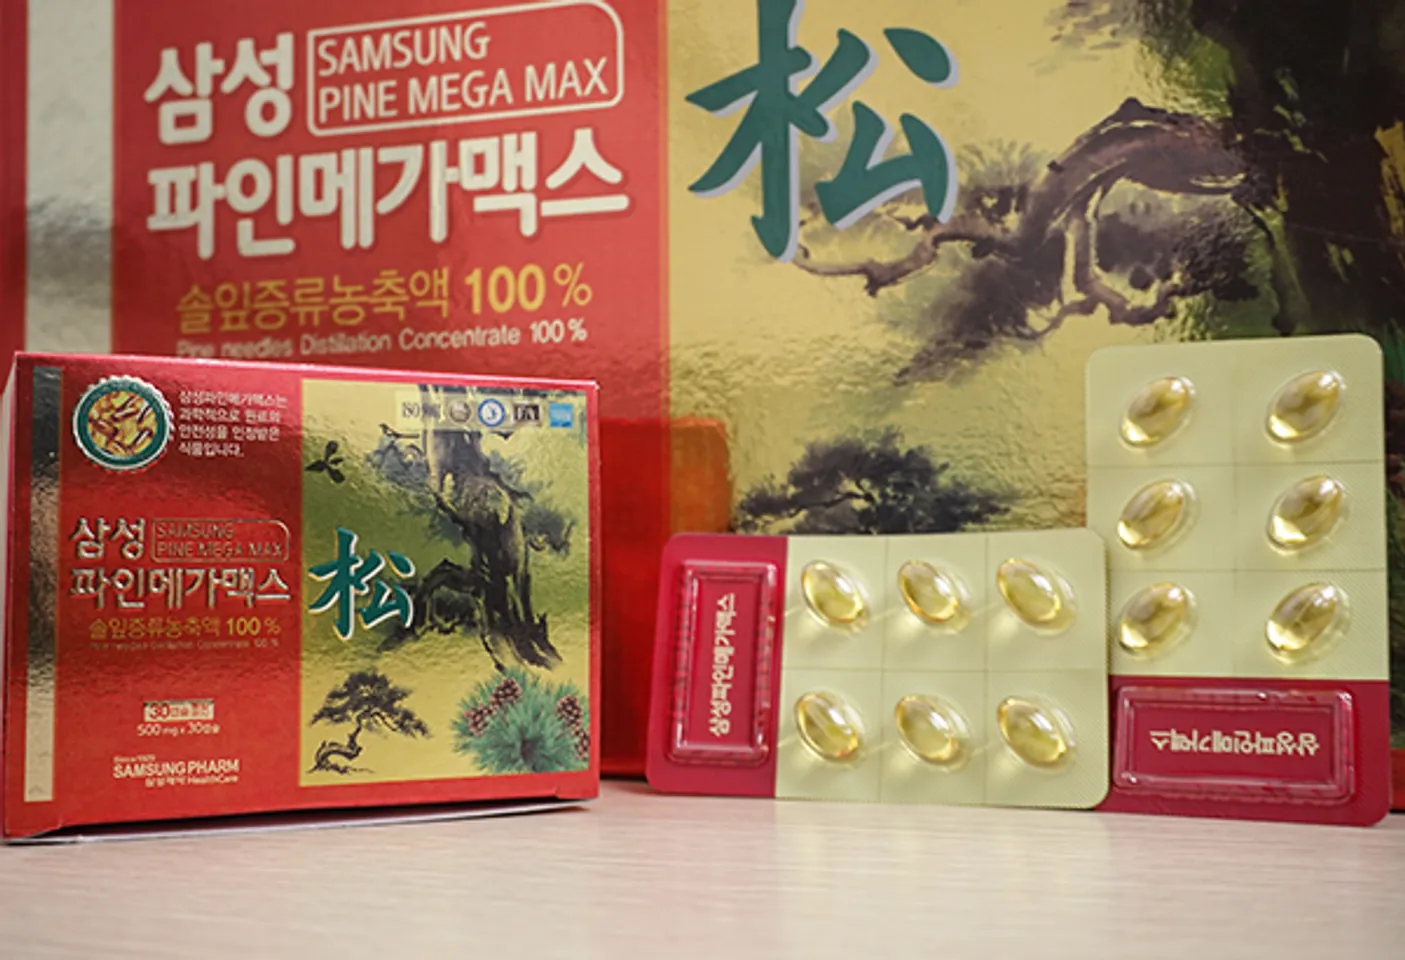 Viên Tinh Dầu Thông Đỏ Samsung Pine Mega Max 180 Viên Hàn Quốc 1